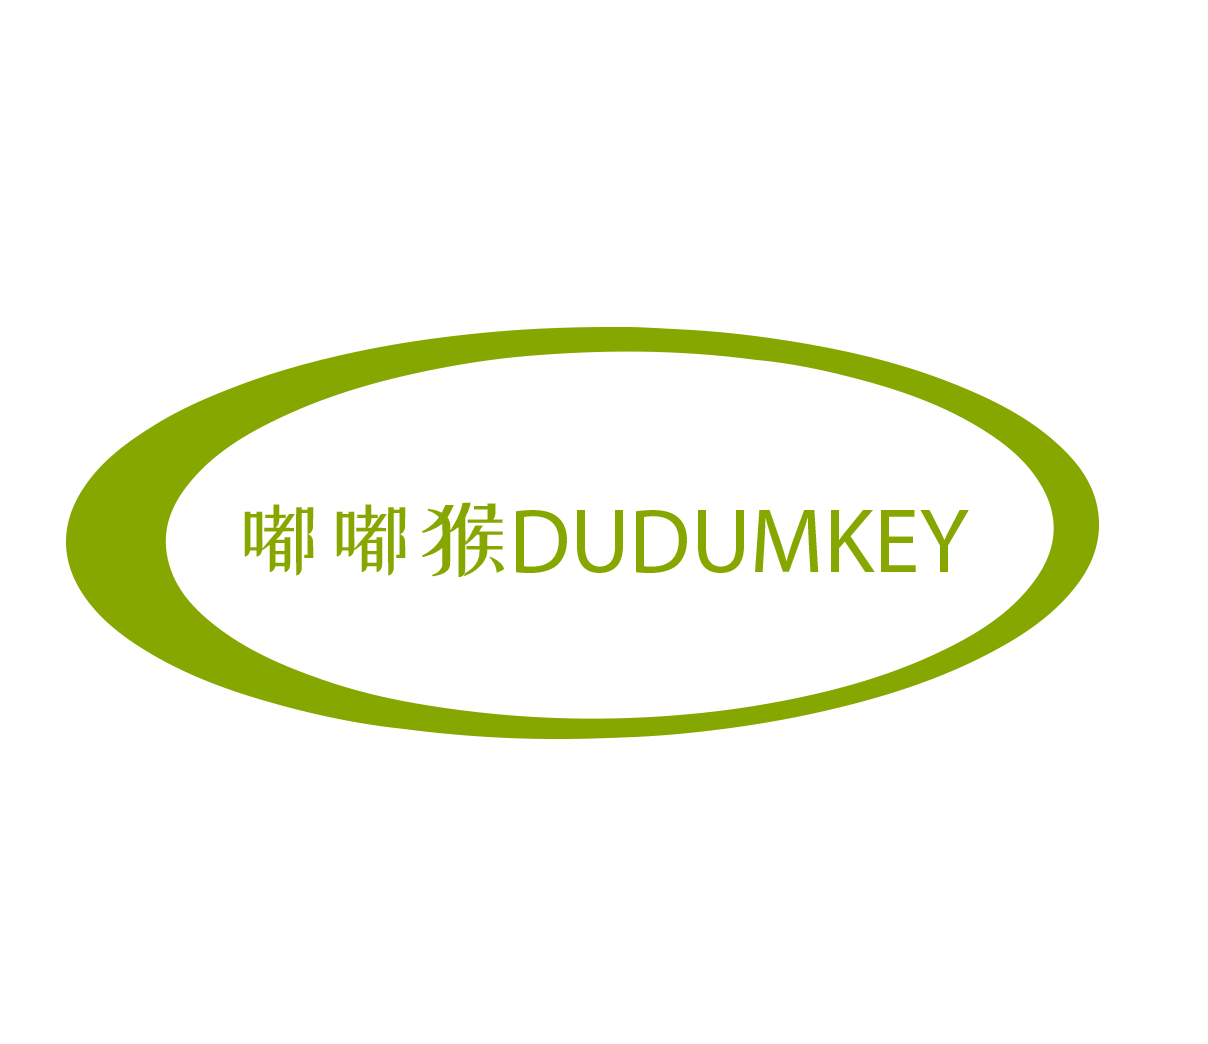 嘟嘟猴DUDUMKEY